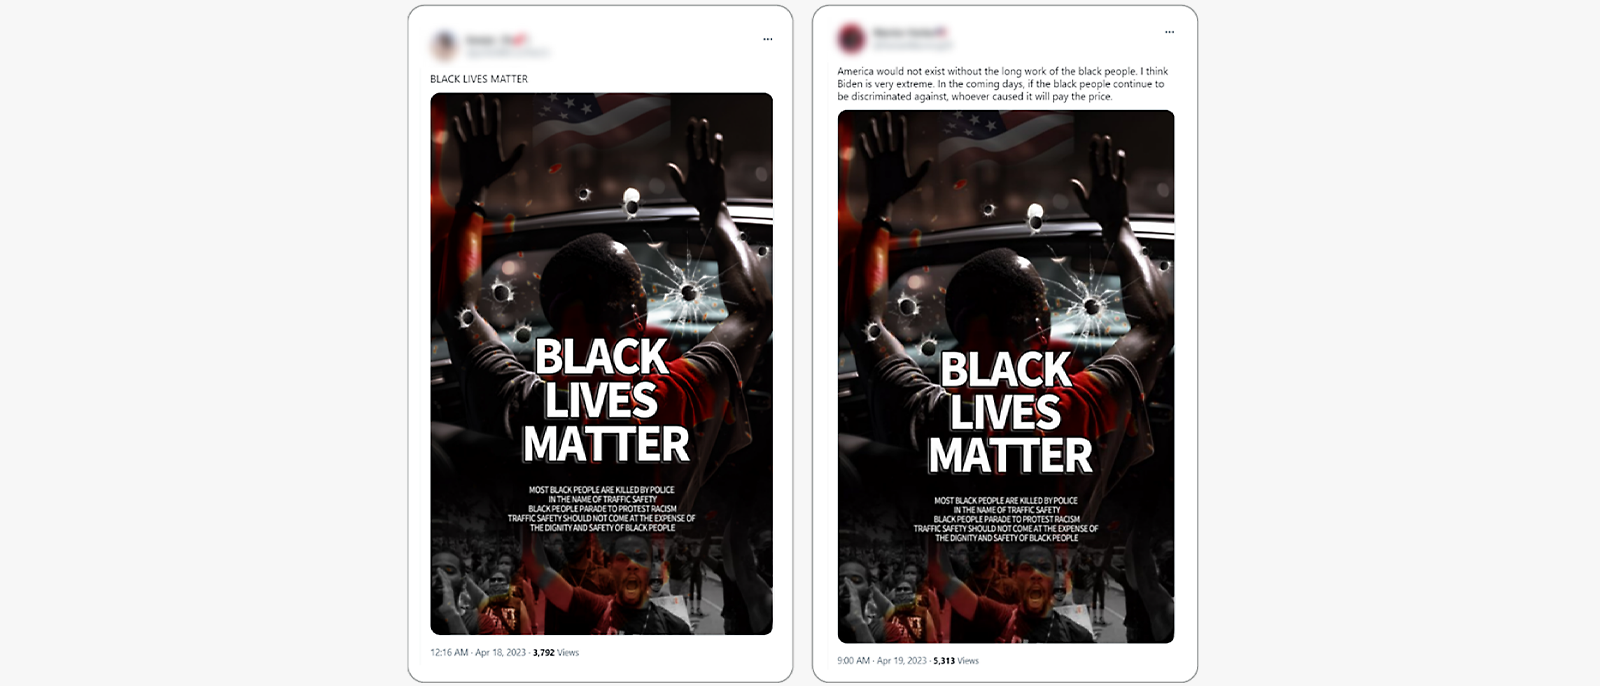 Side-by-side social media posts showing identical Black Lives Matter images.